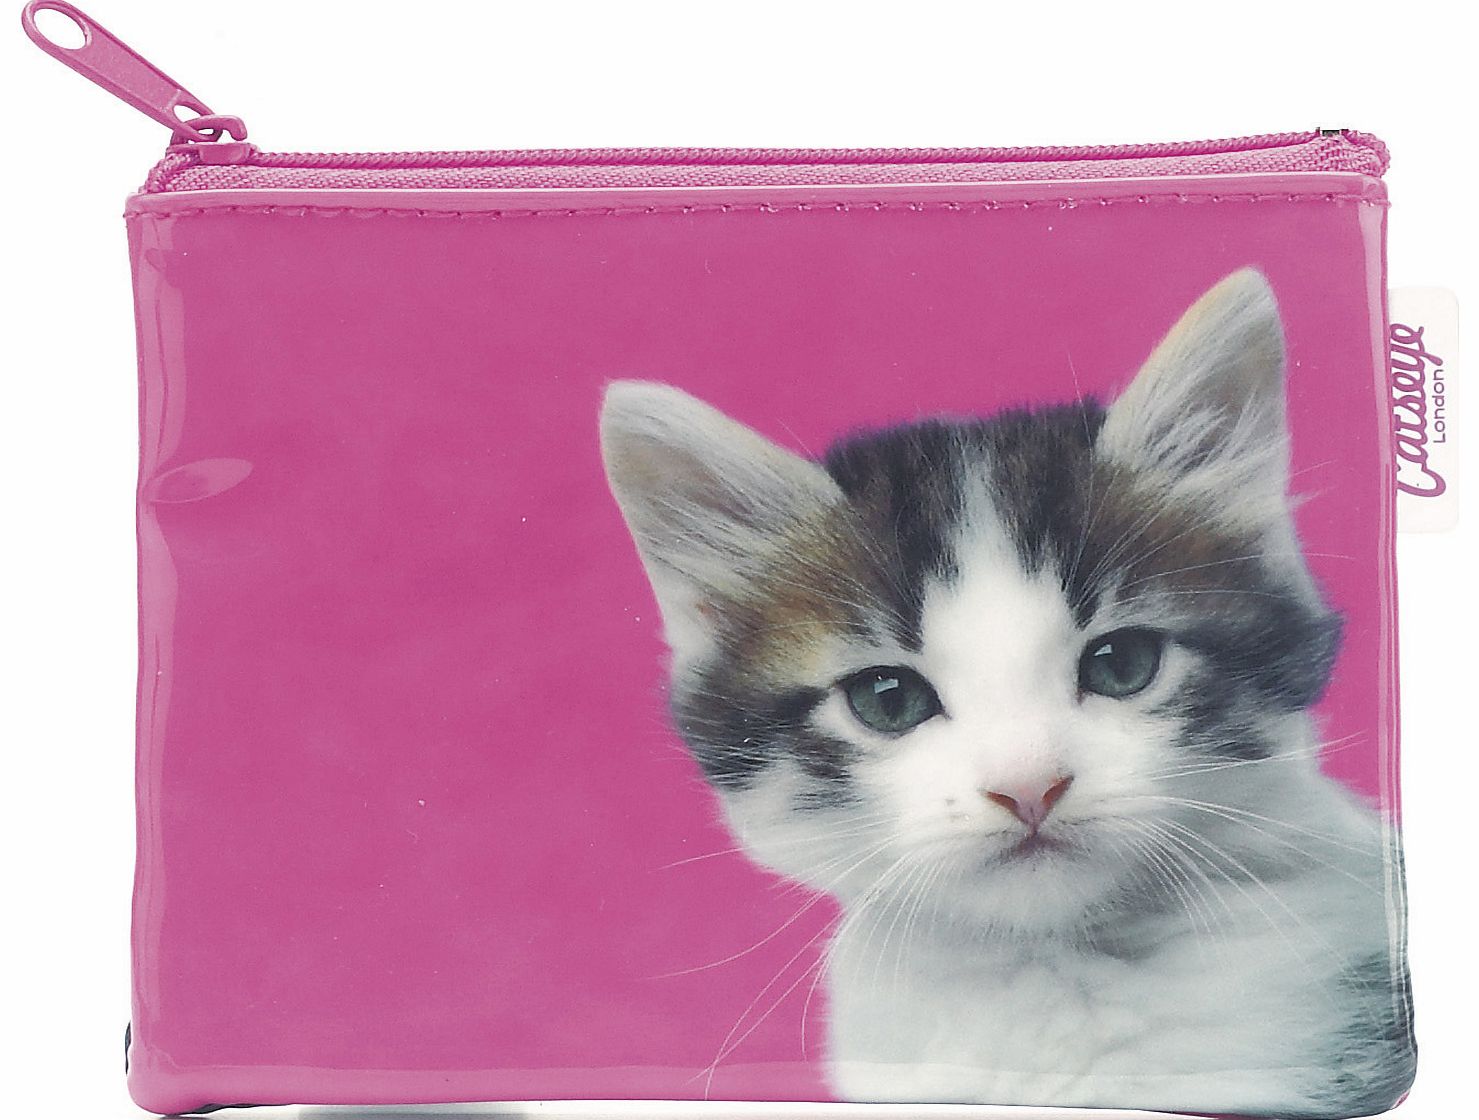 Catseye London Kitten On Hot Pink Zip Purse